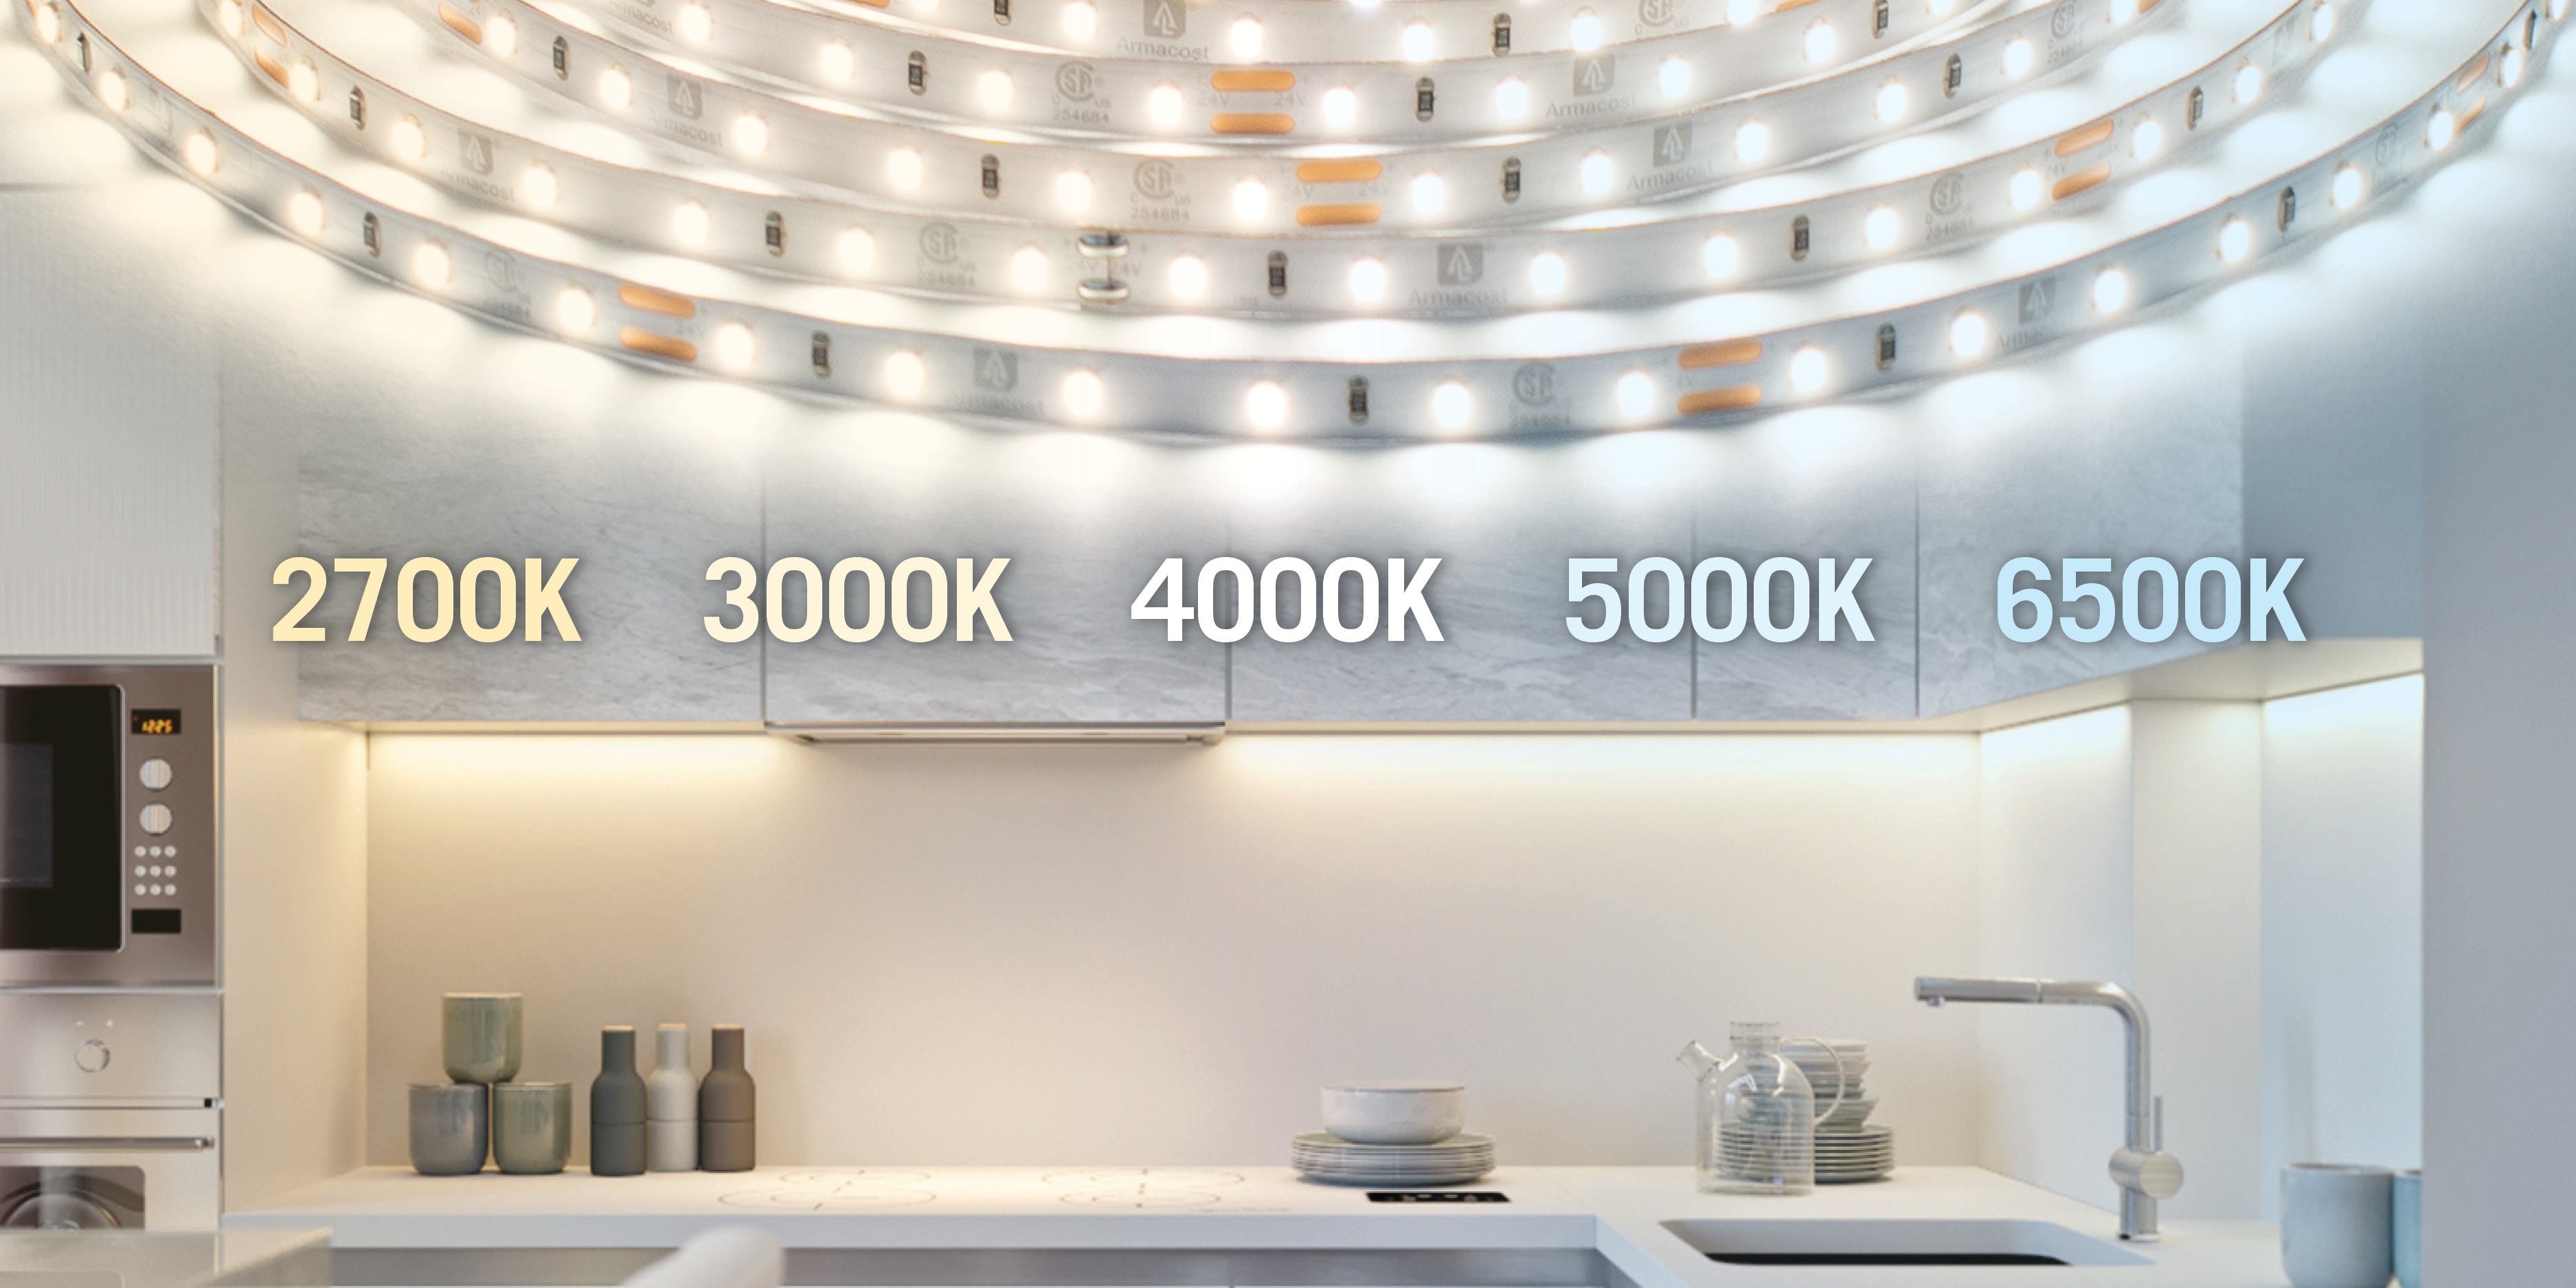 4000k vs 5000k light in kitchen